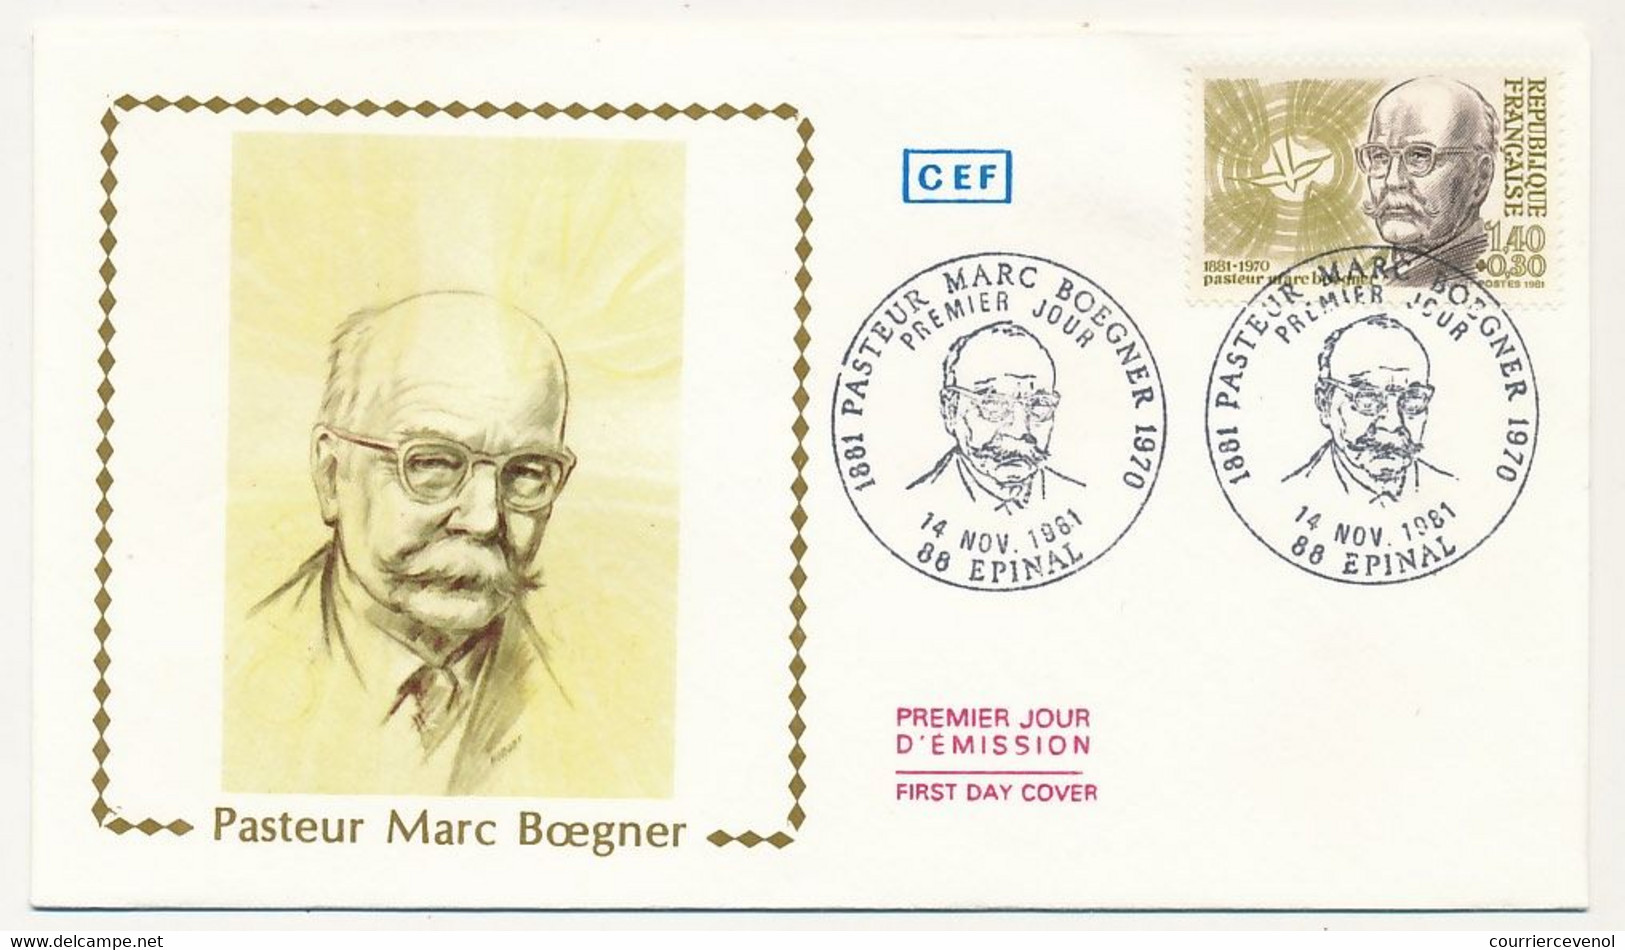 FRANCE - Enveloppe FDC - 1,40 + 0,30 Pasteur Marc Boegner - EPINAL - 14 Nov 1981 - Christianisme